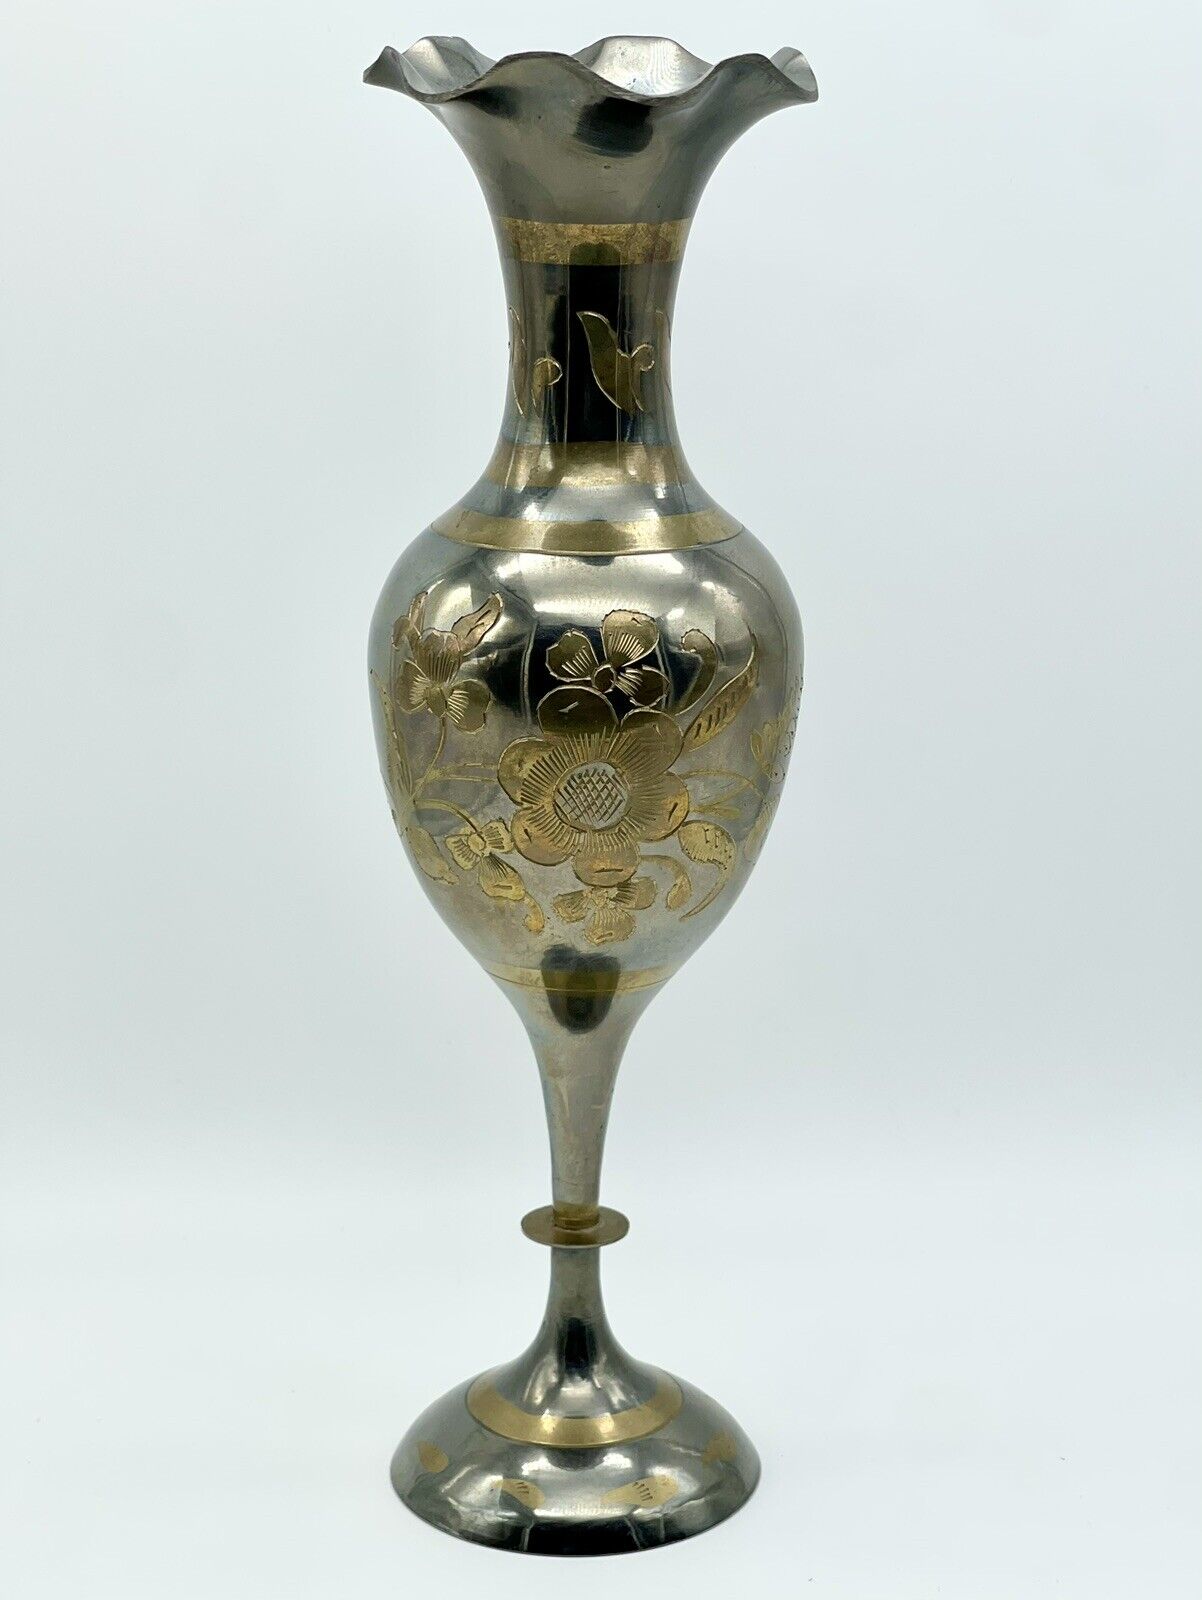 Solid Brass Etched Floral Vase Engraved Flower Design Scallop Wave Rim